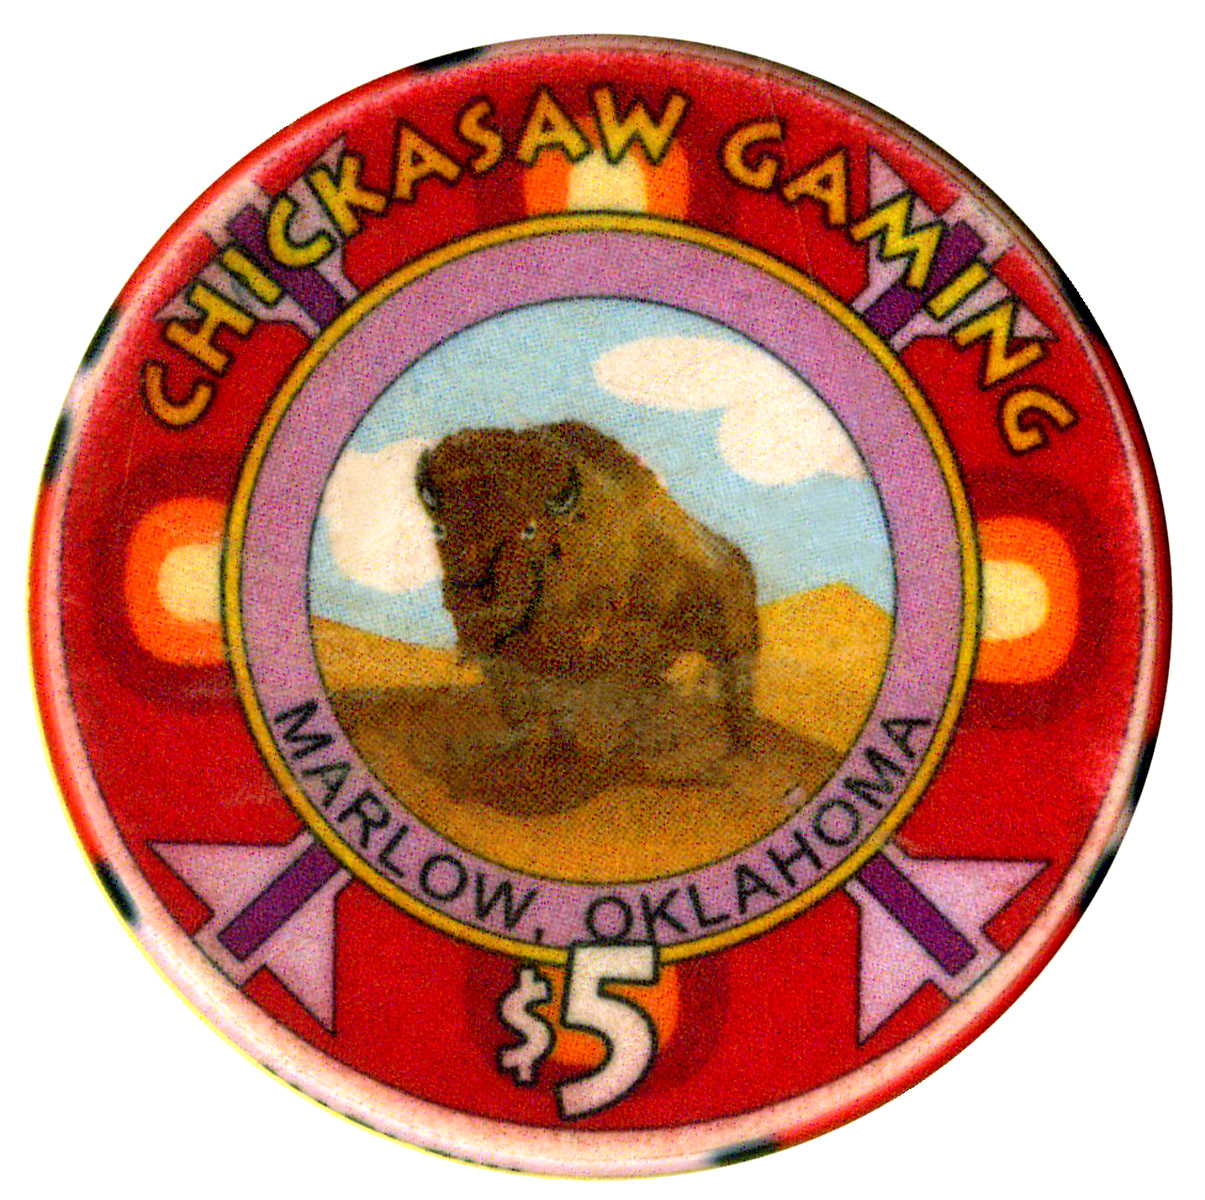 chickasaw casino casting call